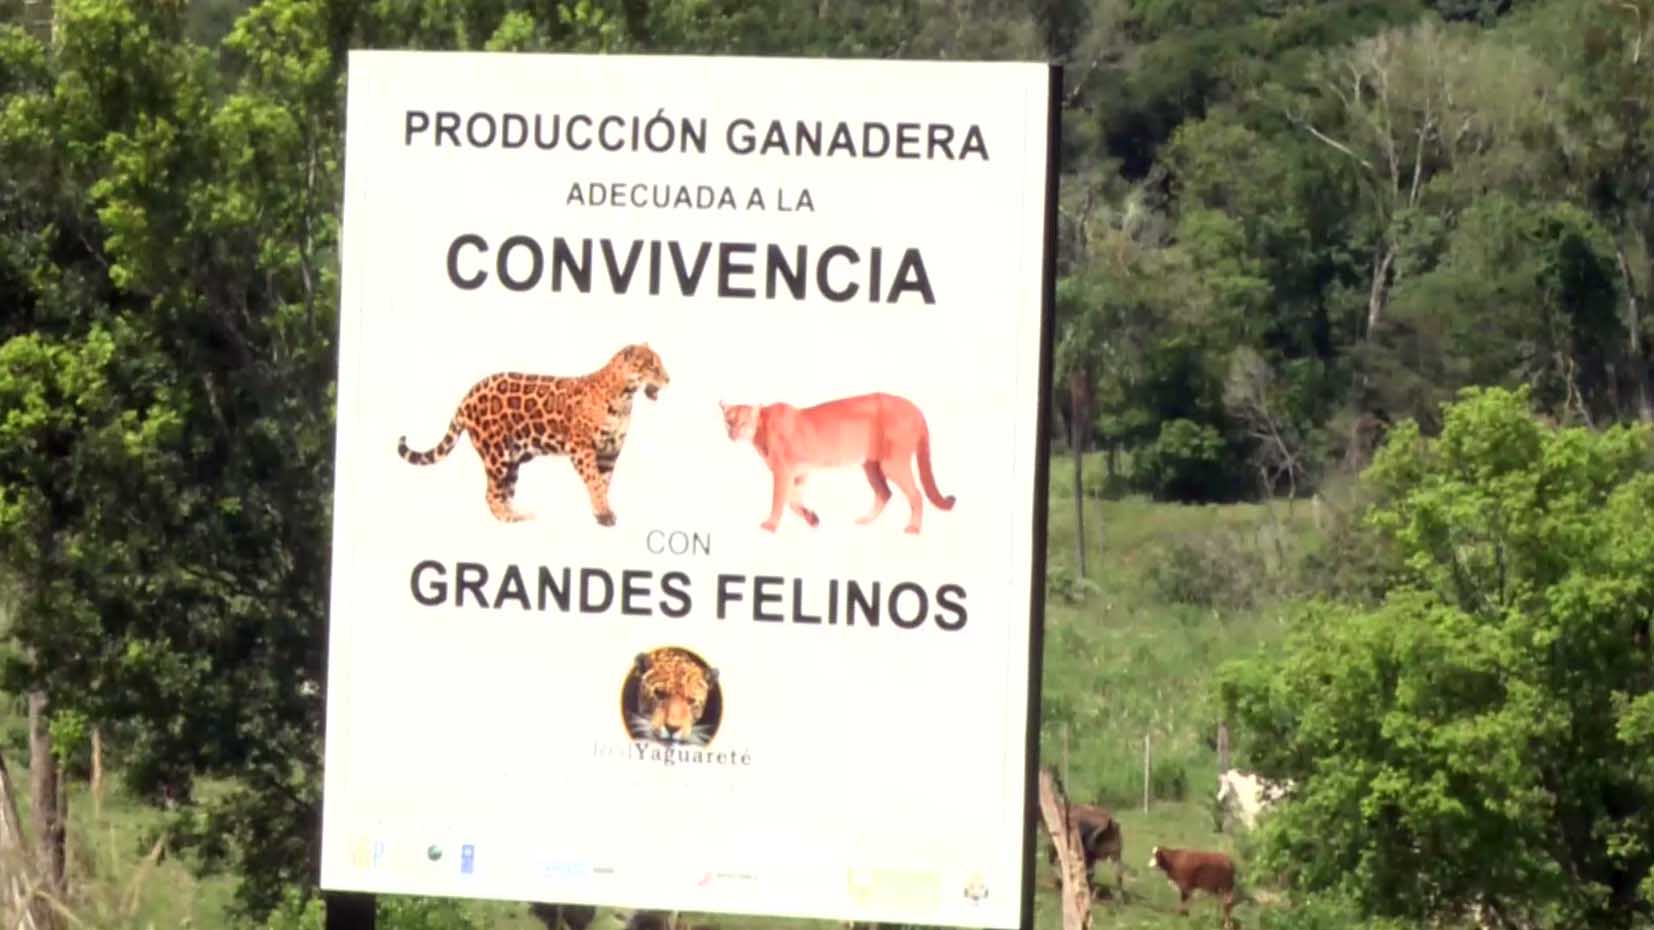 Misiones: primera provincia que logra convivencia entre la ganadería y yaguaretés